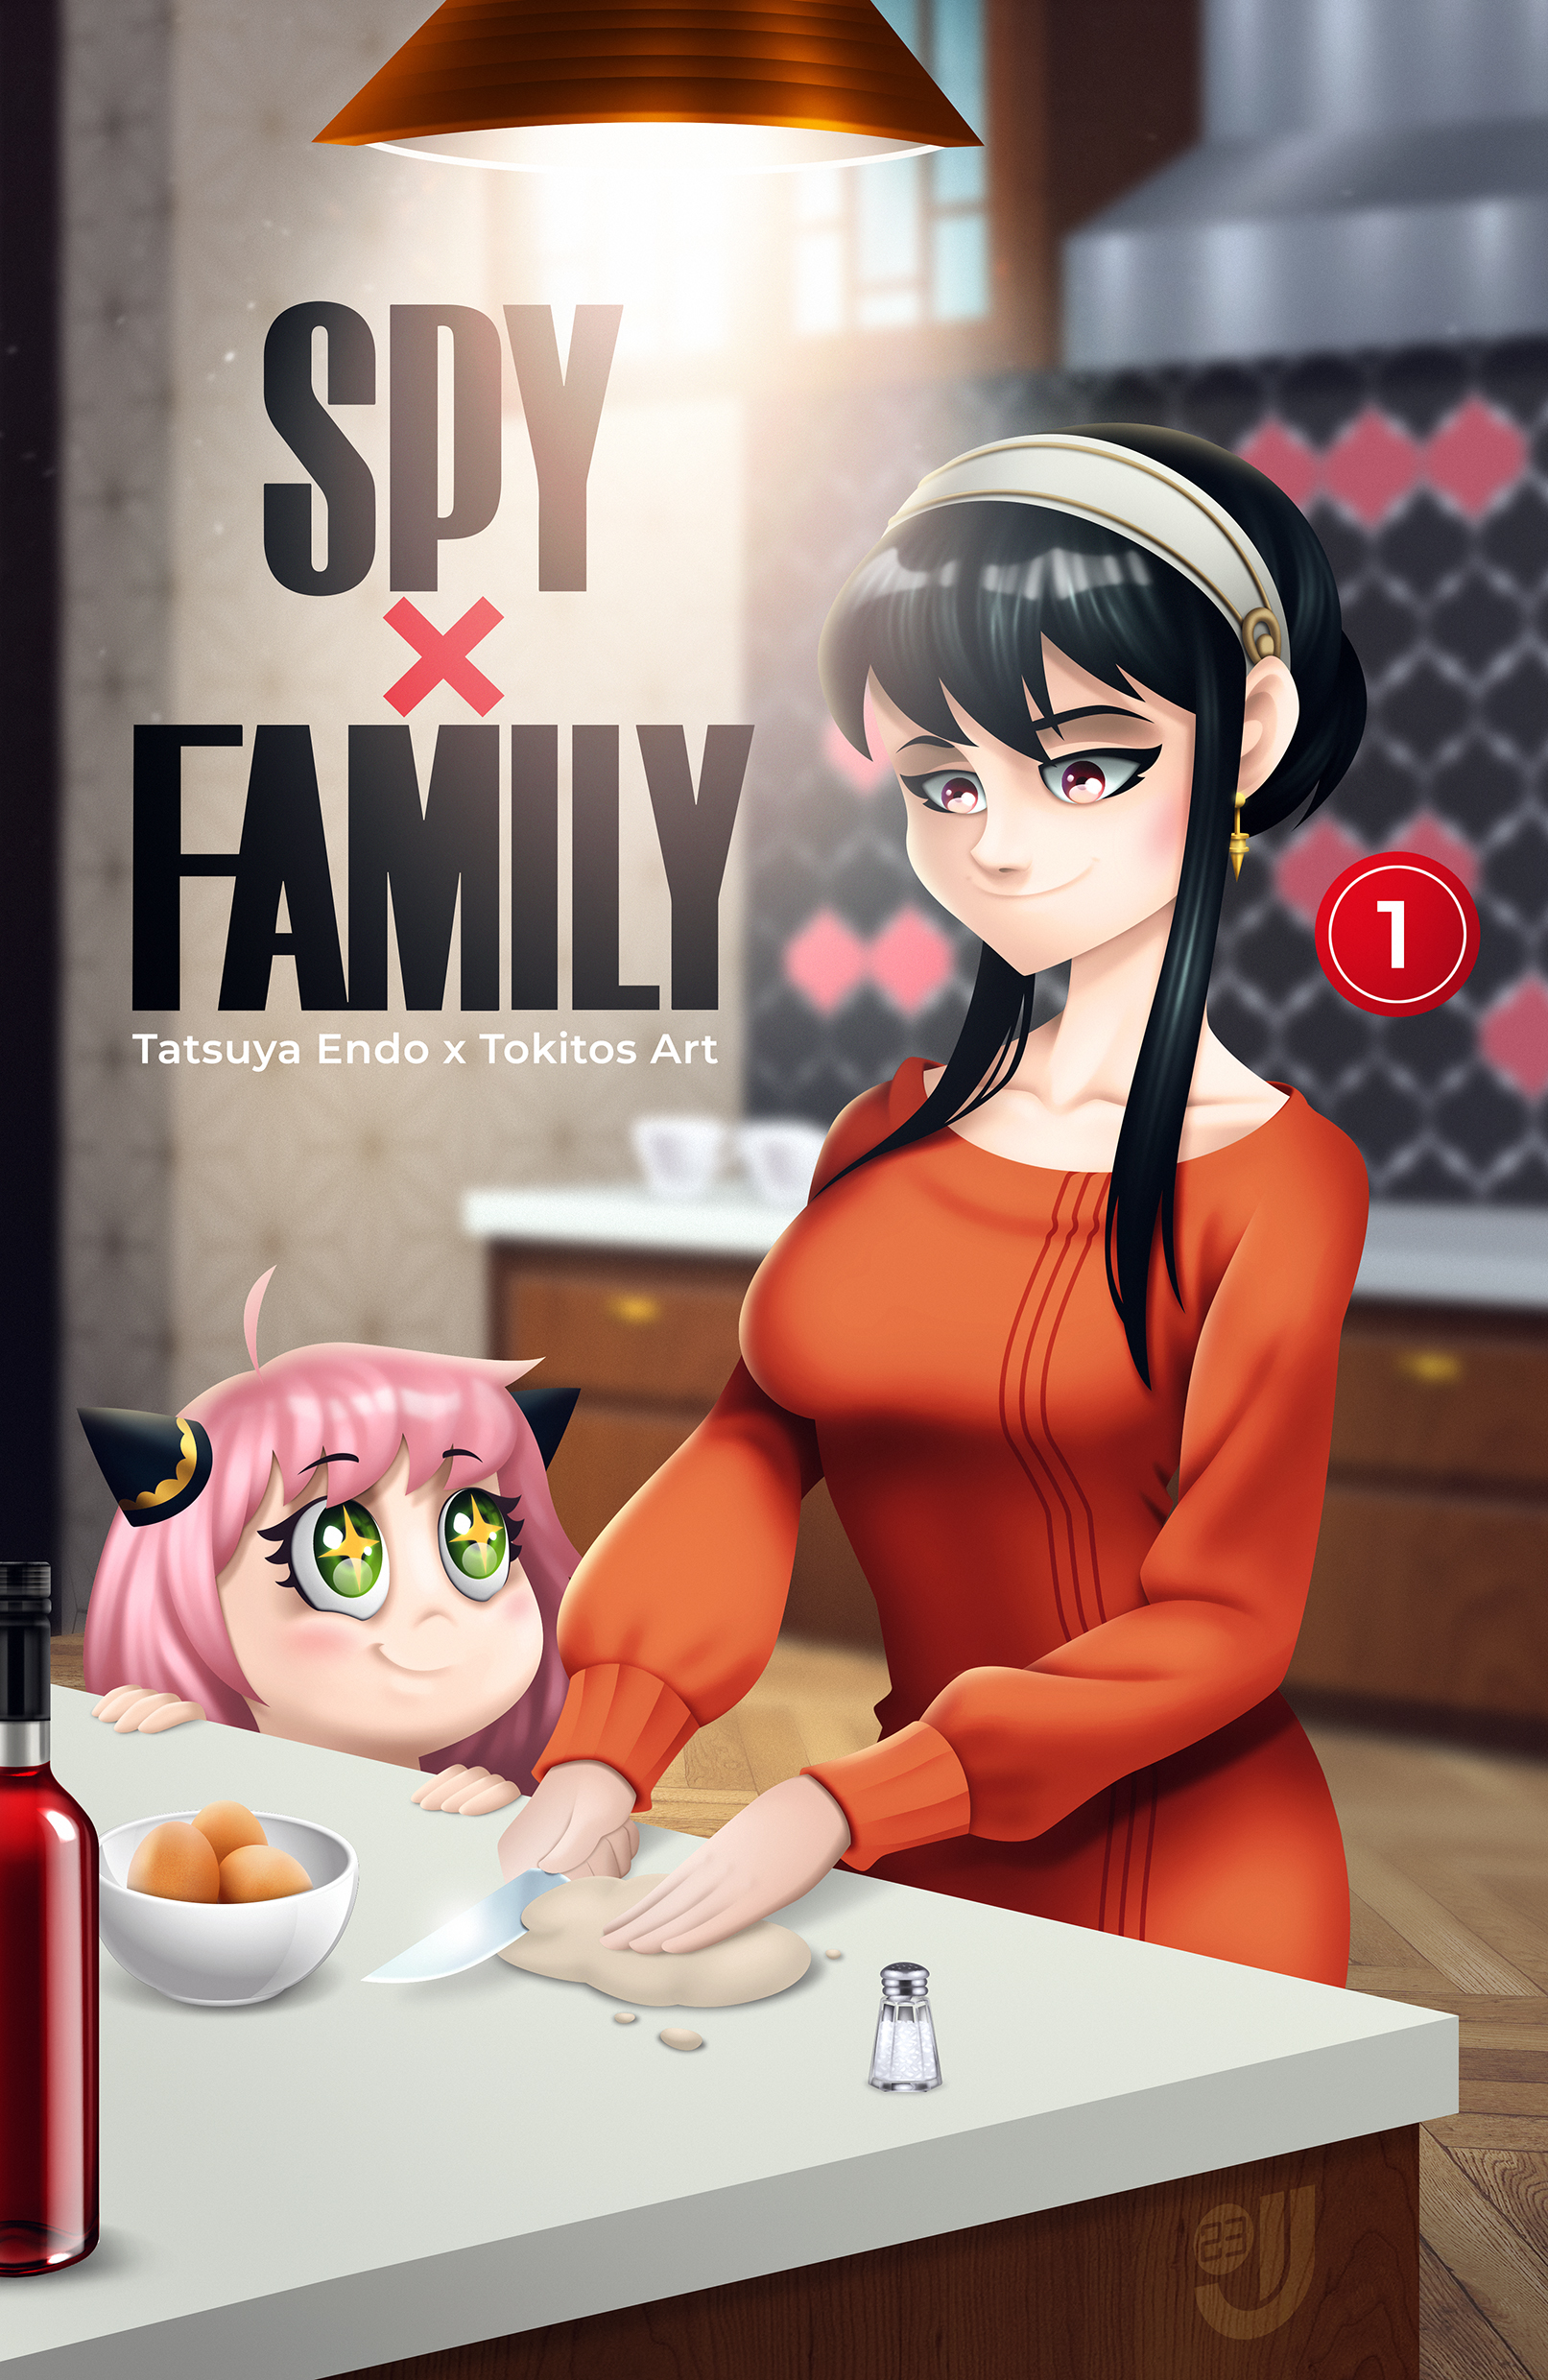 SPY X FAMILY - O Vício